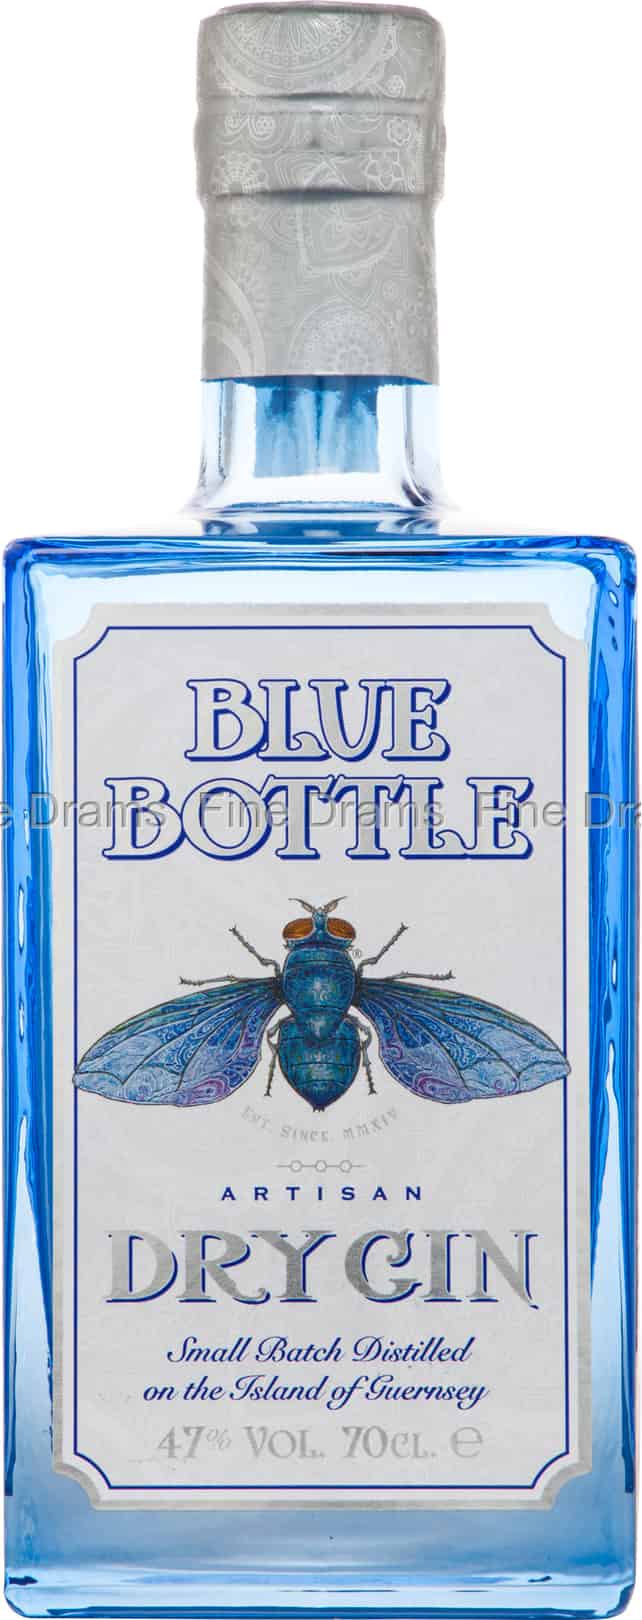 Blue Bottle Dry Gin